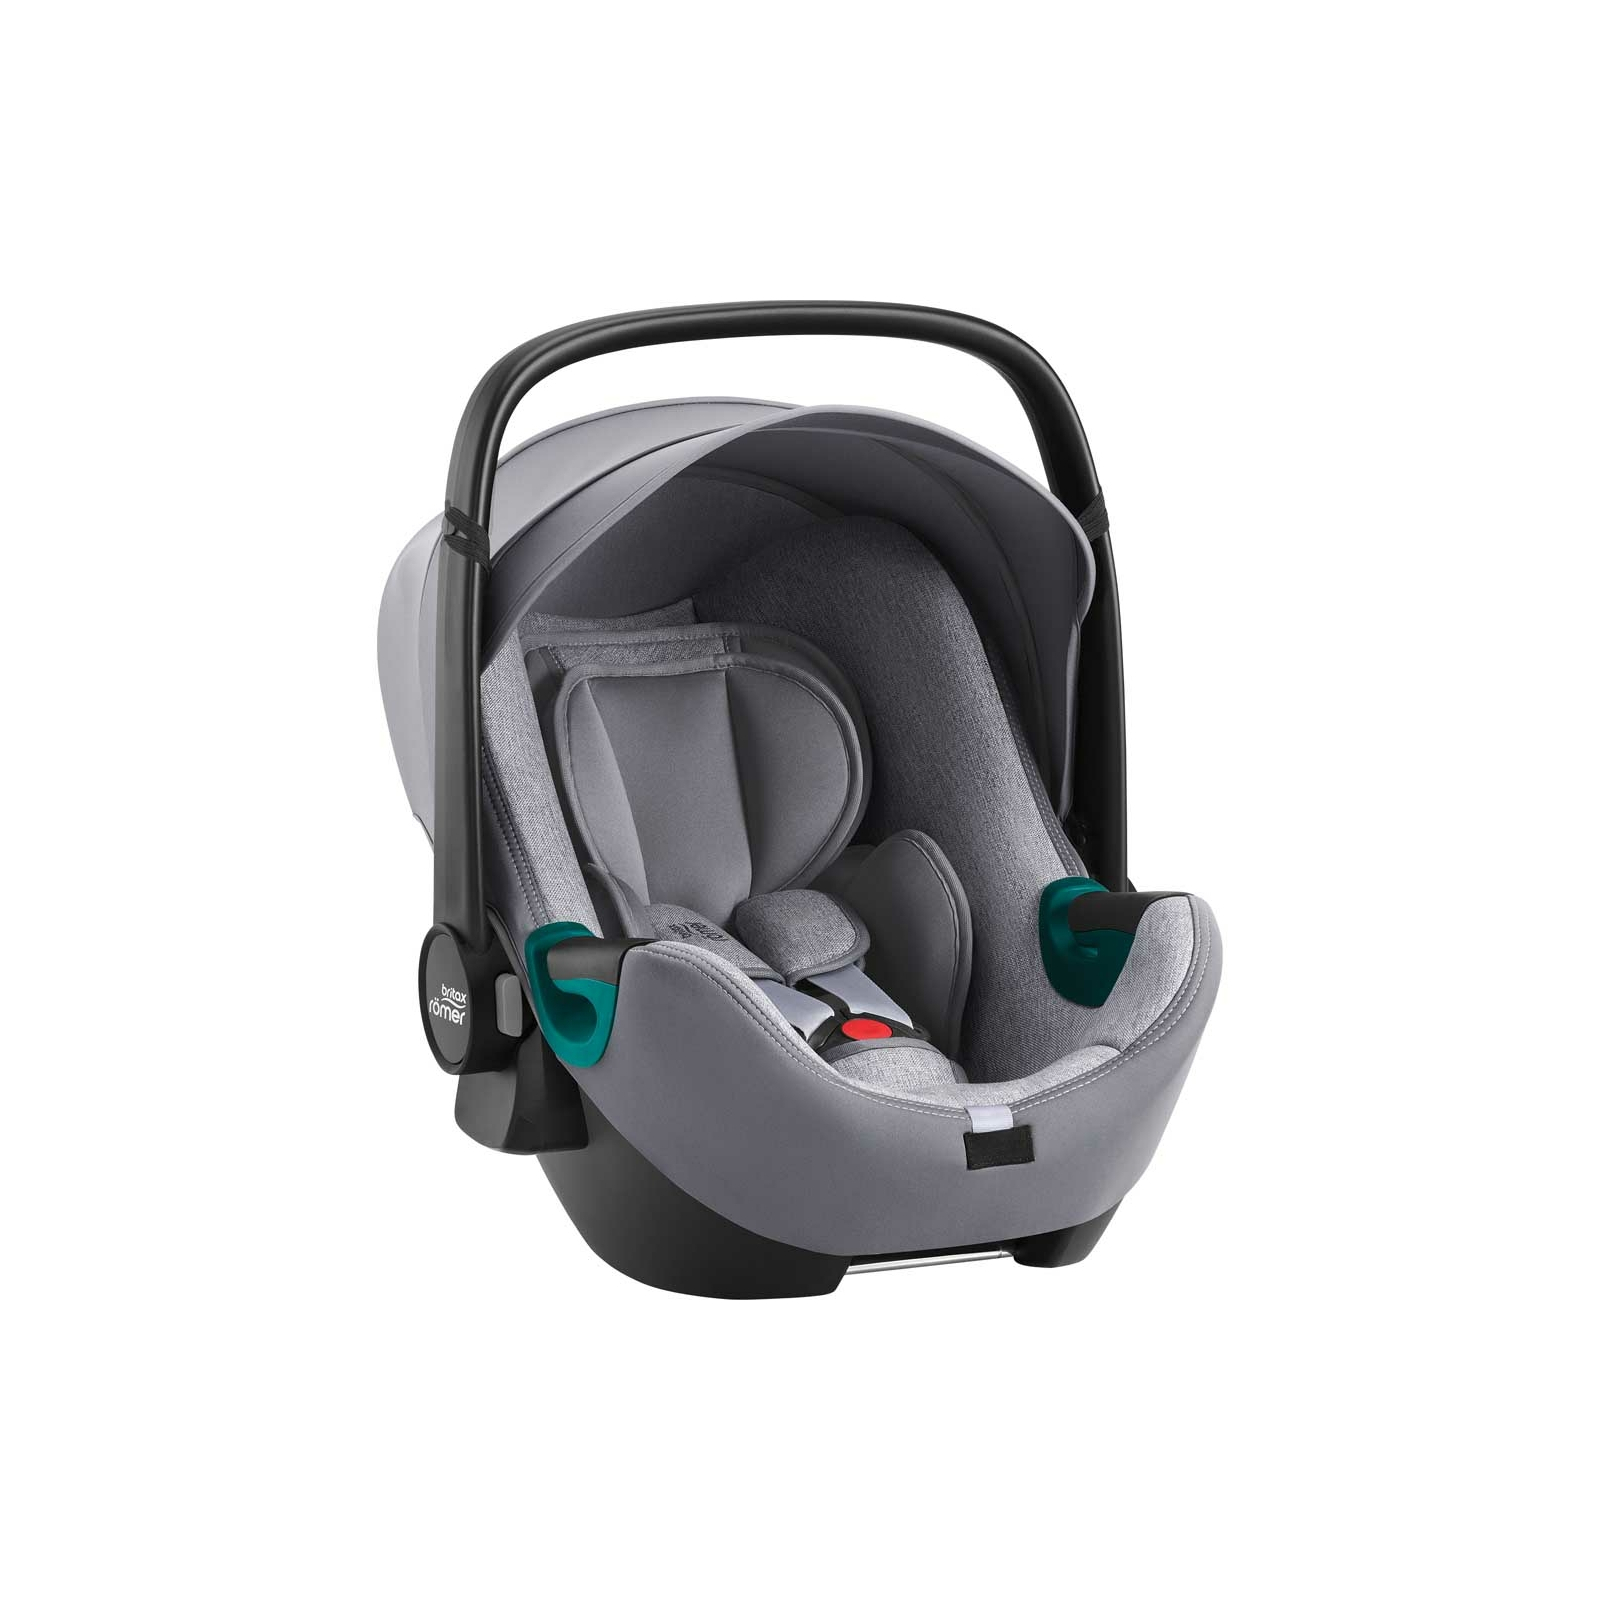 Автокресло Britax-Romer Baby-Safe 3 i-Size Jade Green (2000036940) изображение 4